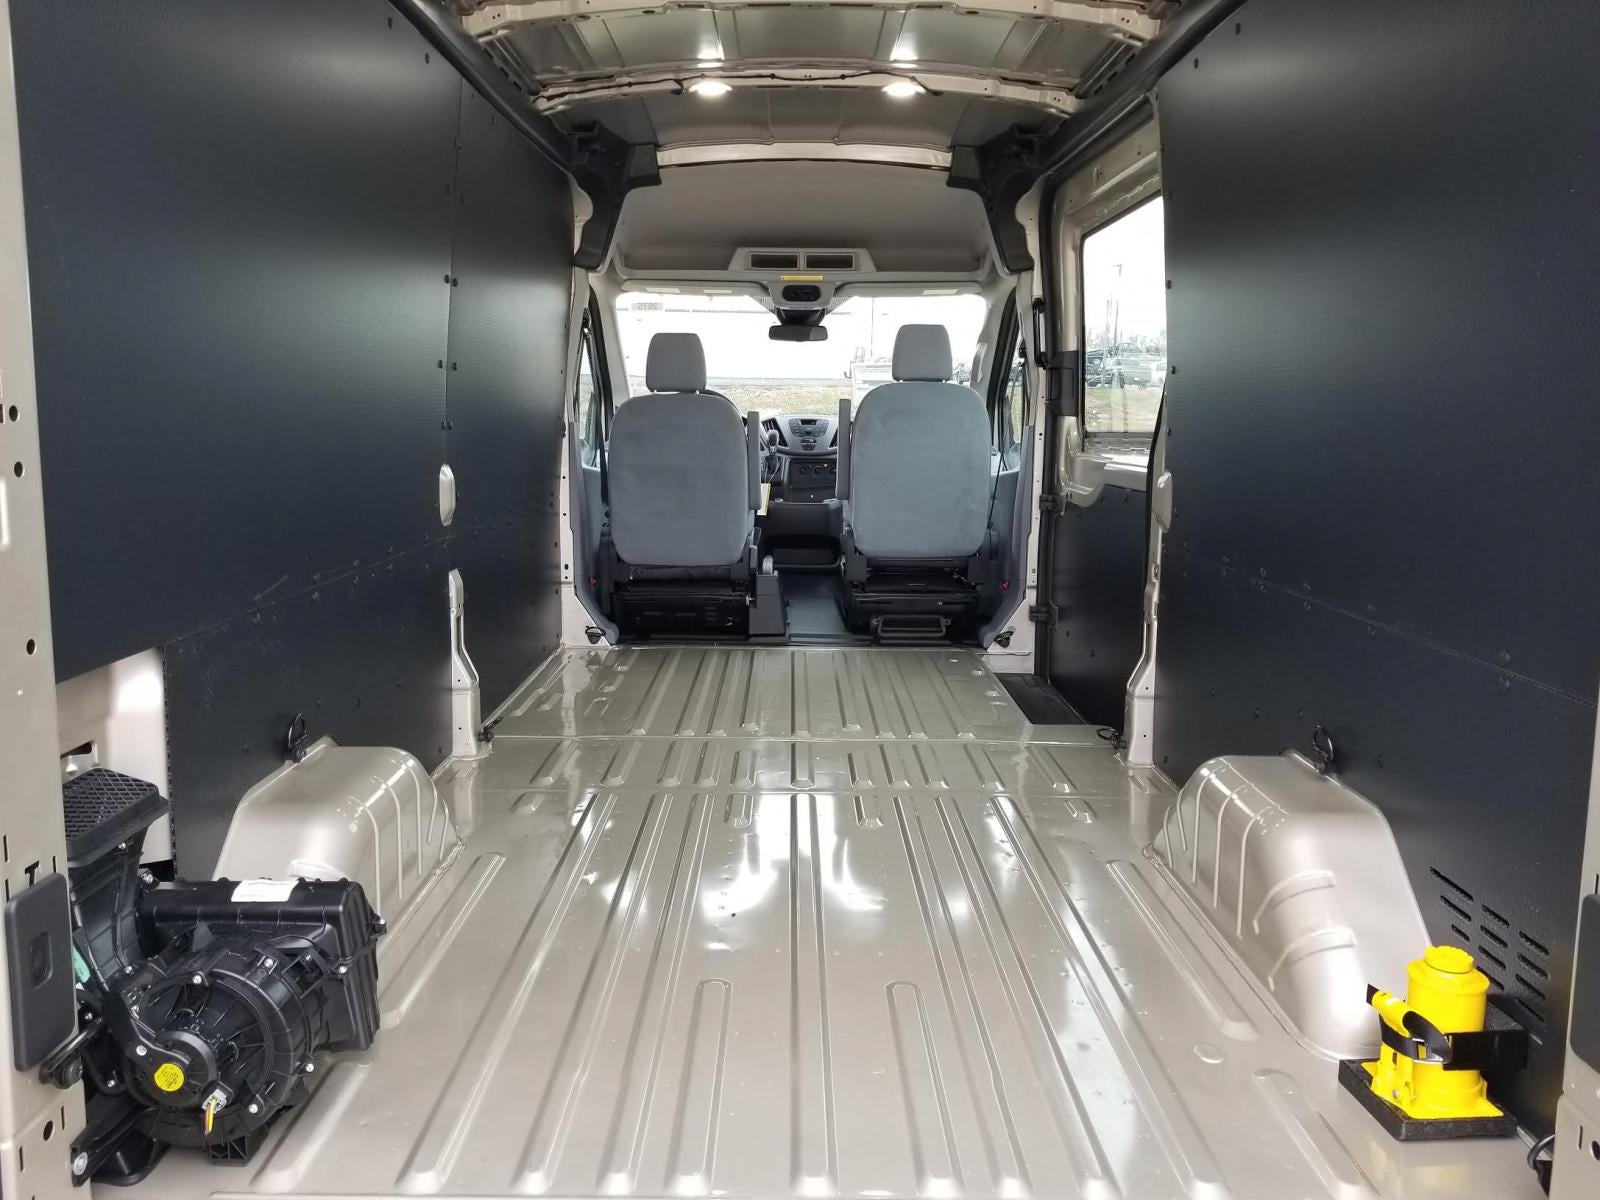 Rear Air Conditioning in Cargo Van 